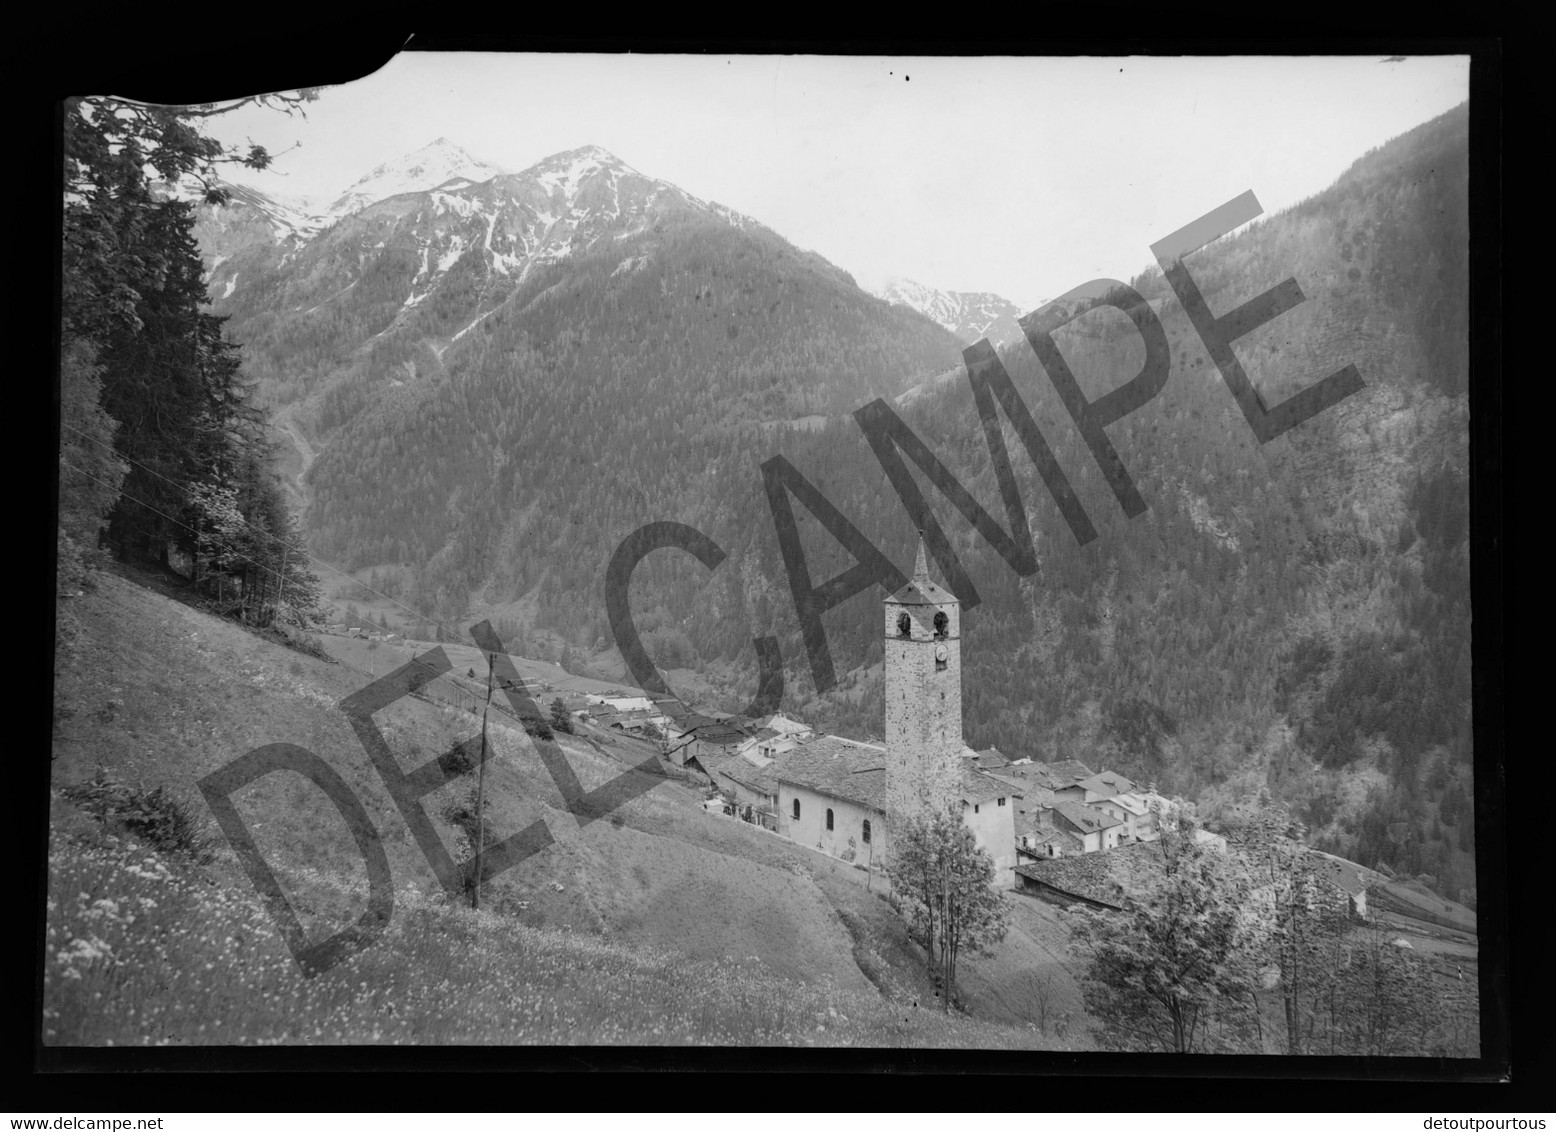 Lot 17 négatifs verre 13x18 Village de PEISEY NANCROIX et Chapelle Notre Dame des VERNETTES Savoie vers 1930